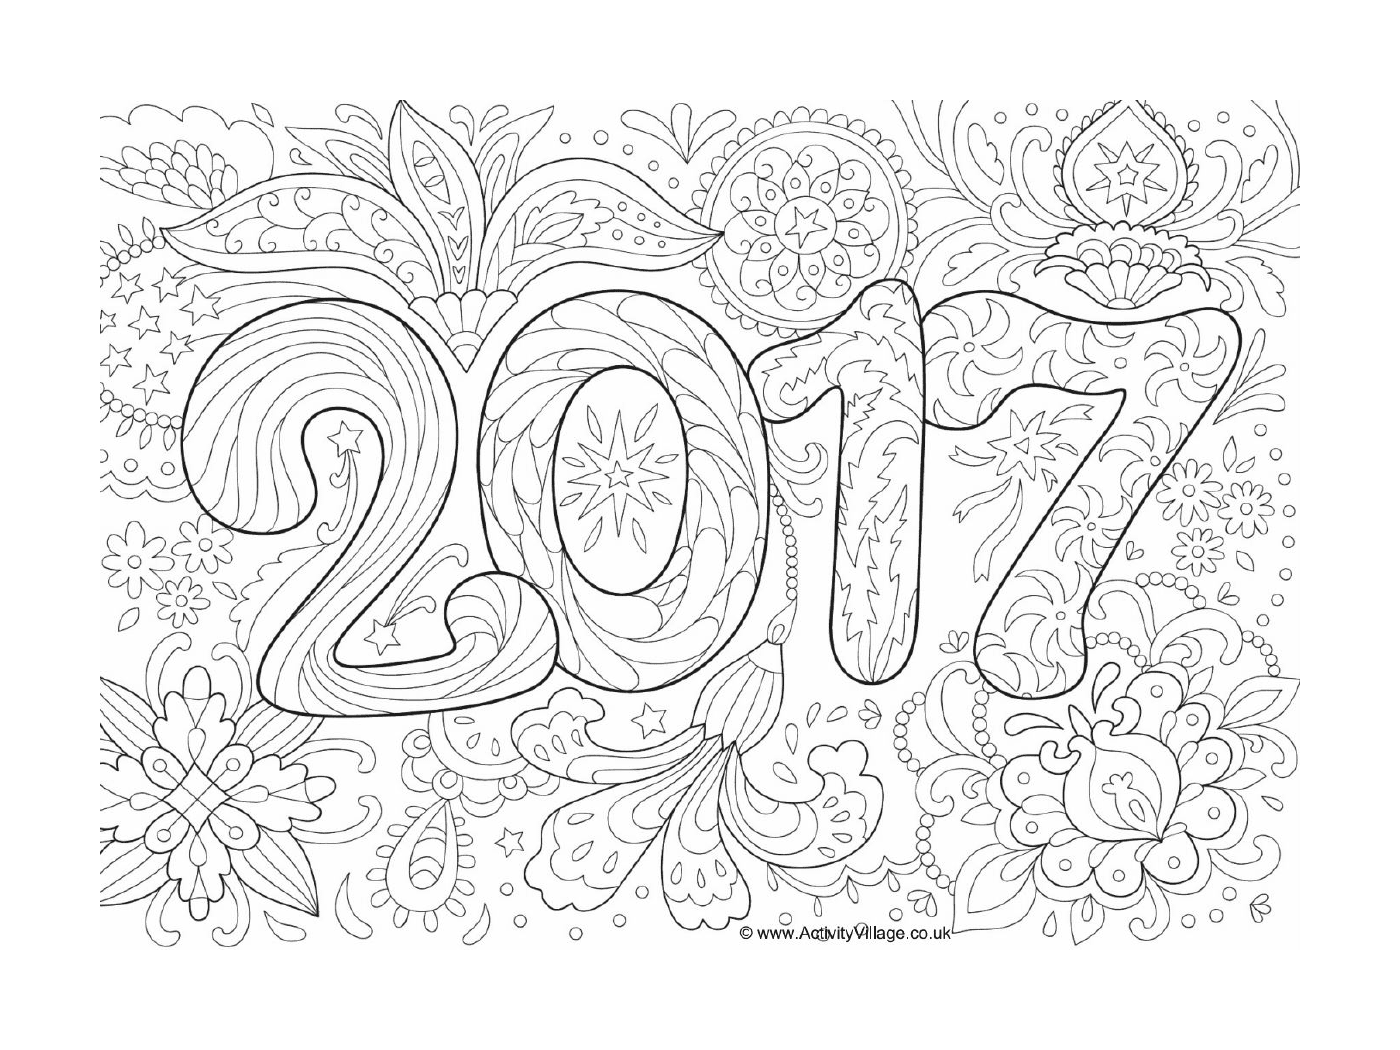   Doodle pour le nouvel an 2017 destiné aux adultes 